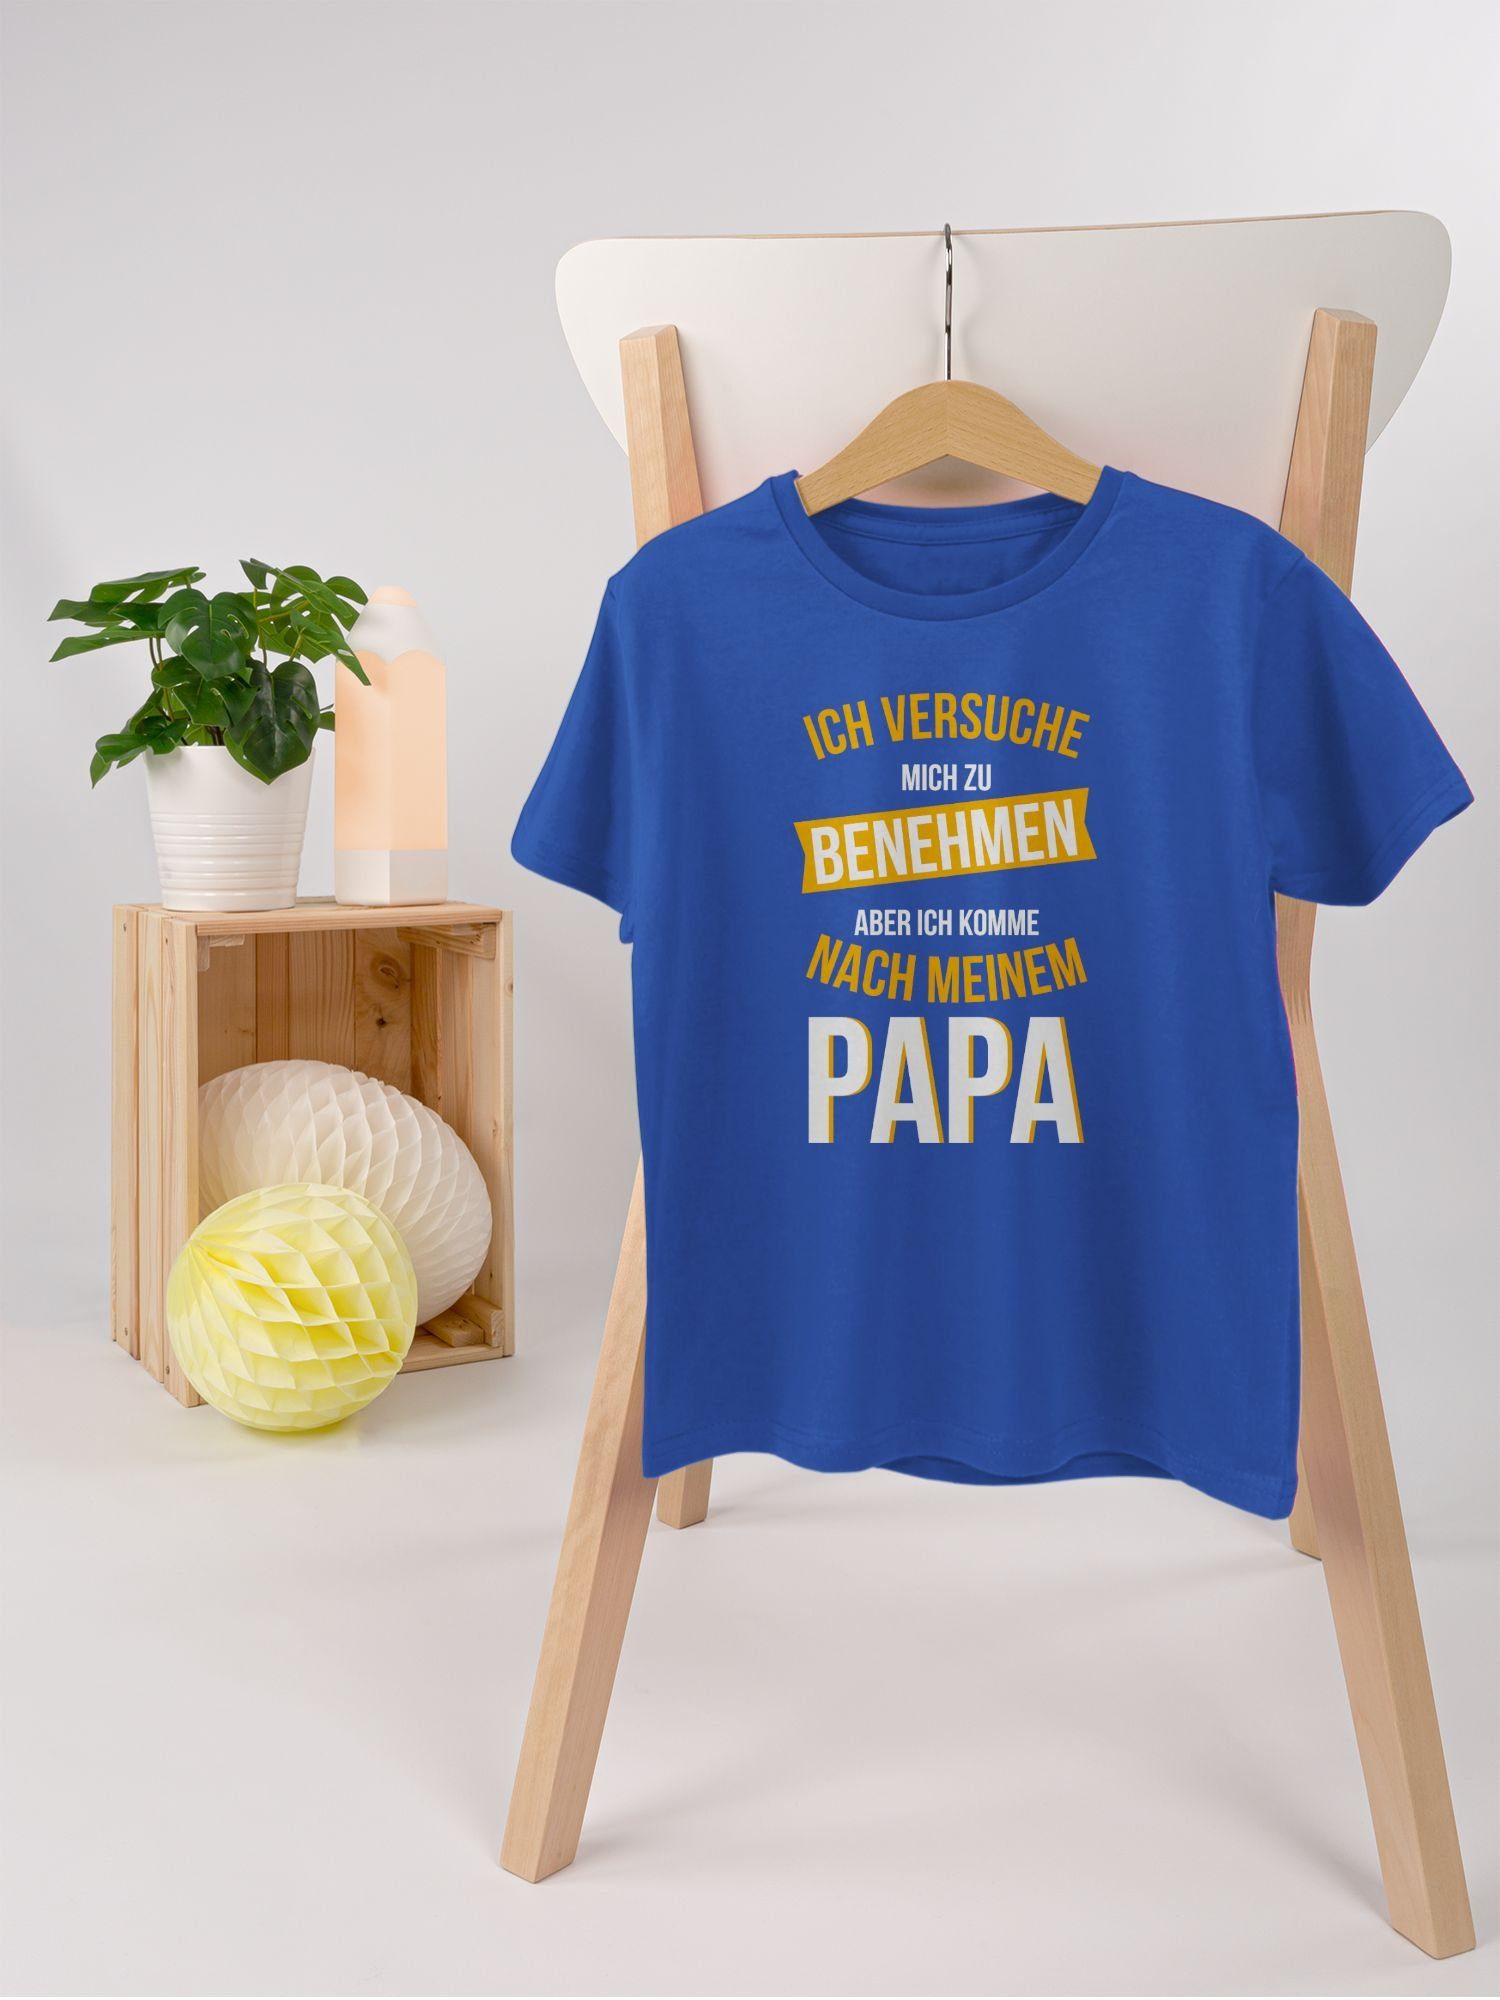 Shirtracer T-Shirt Versuche Kinder Statement Sprüche Papa Royalblau nach komme benehmen mich zu 2